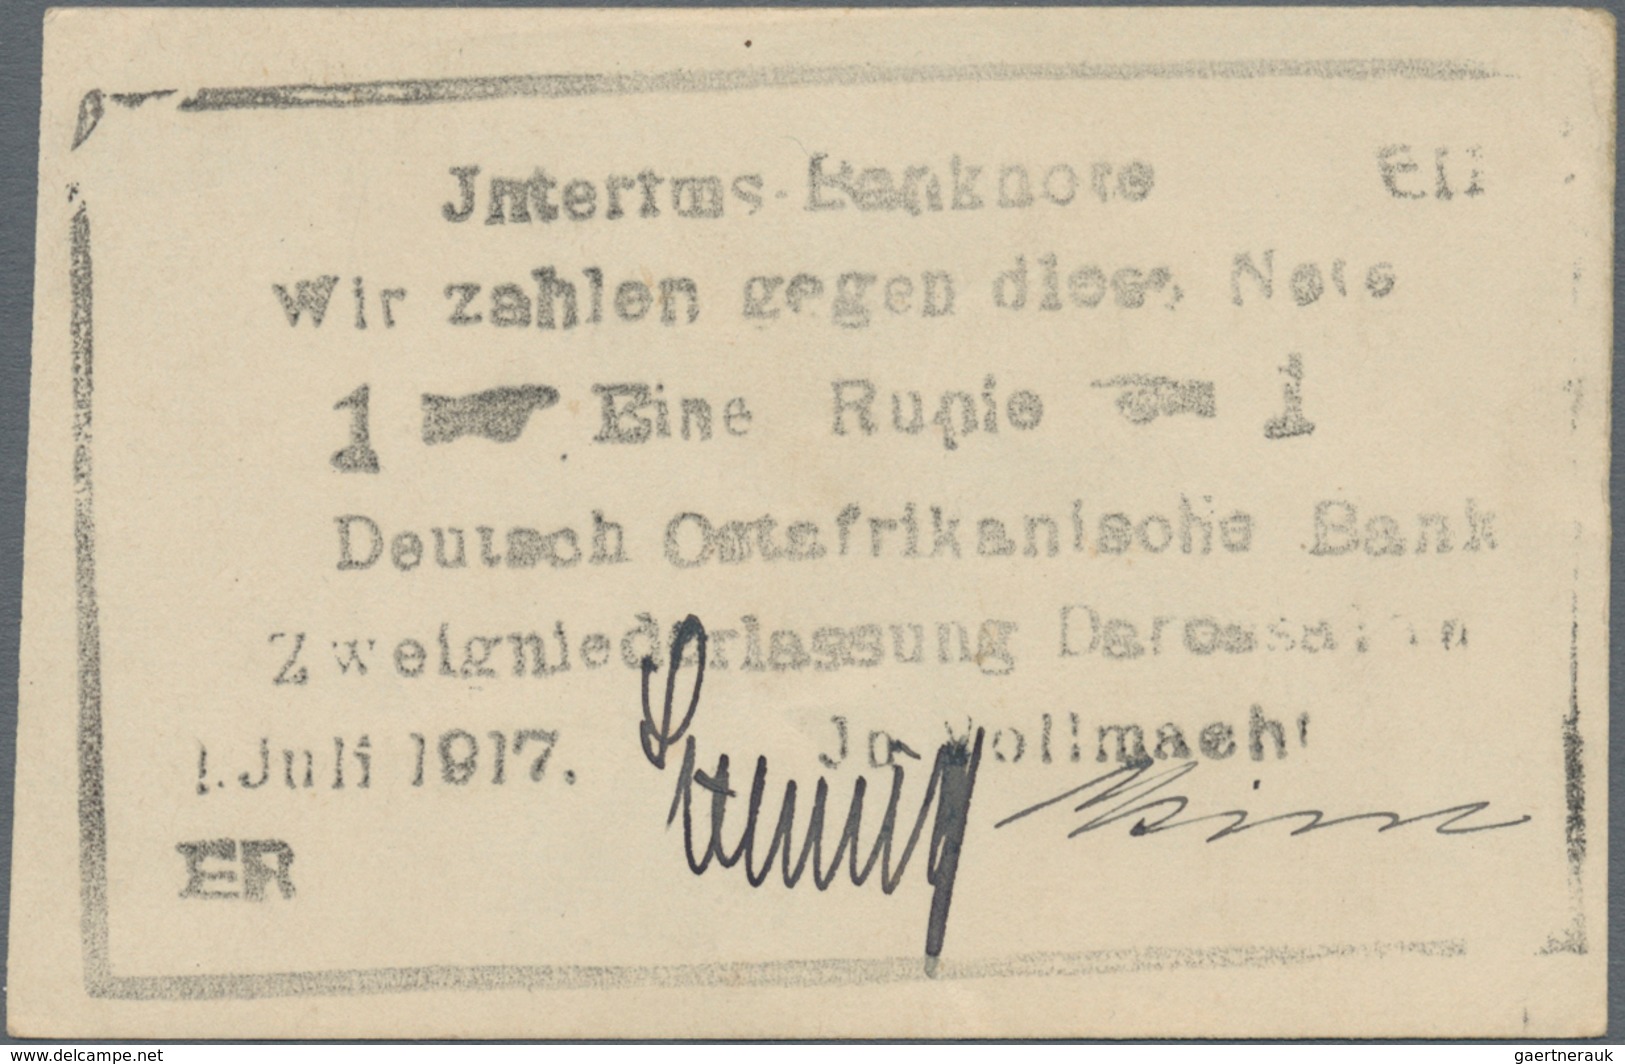 Deutschland - Kolonien: Kleines Lot mit 13 Banknoten DOA, dabei 2 x 1 Rupie 1.11.1915 Serie A (Ro.91